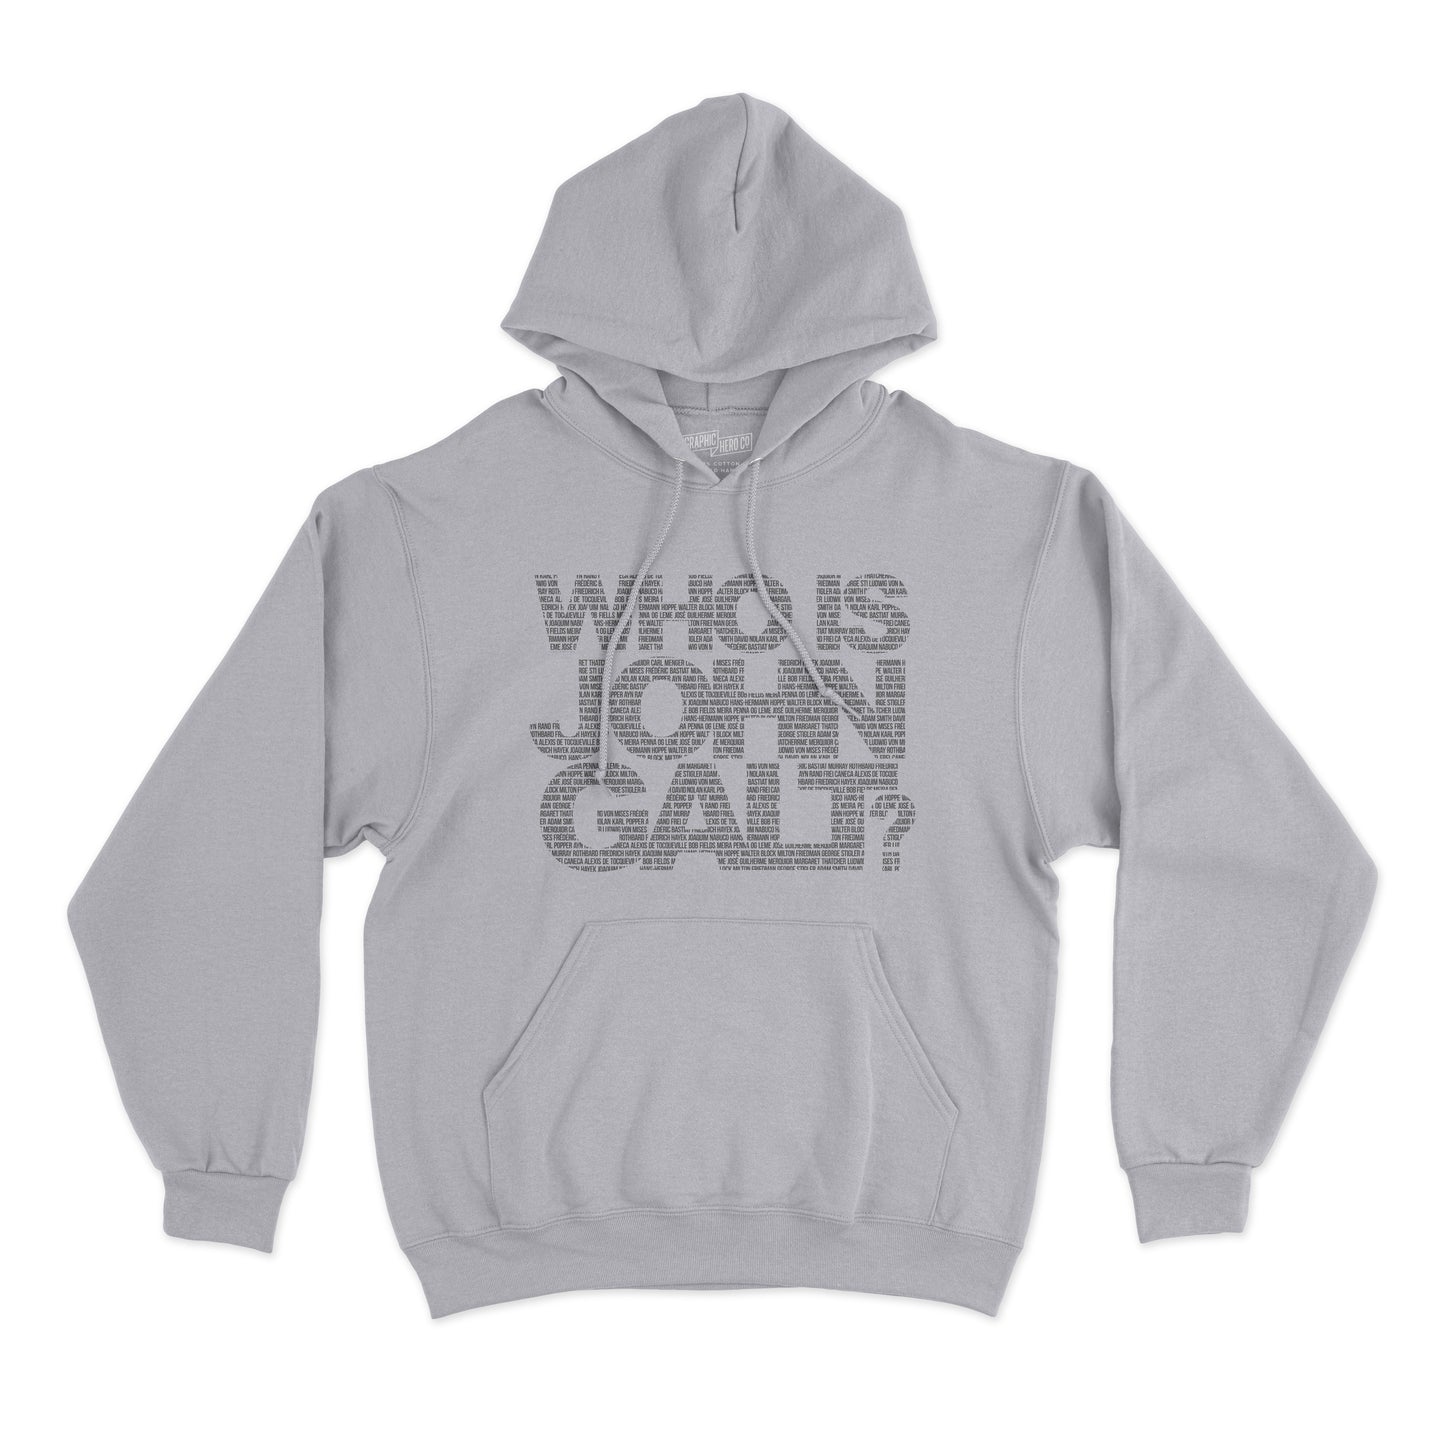 Moletom - Who is John Galt